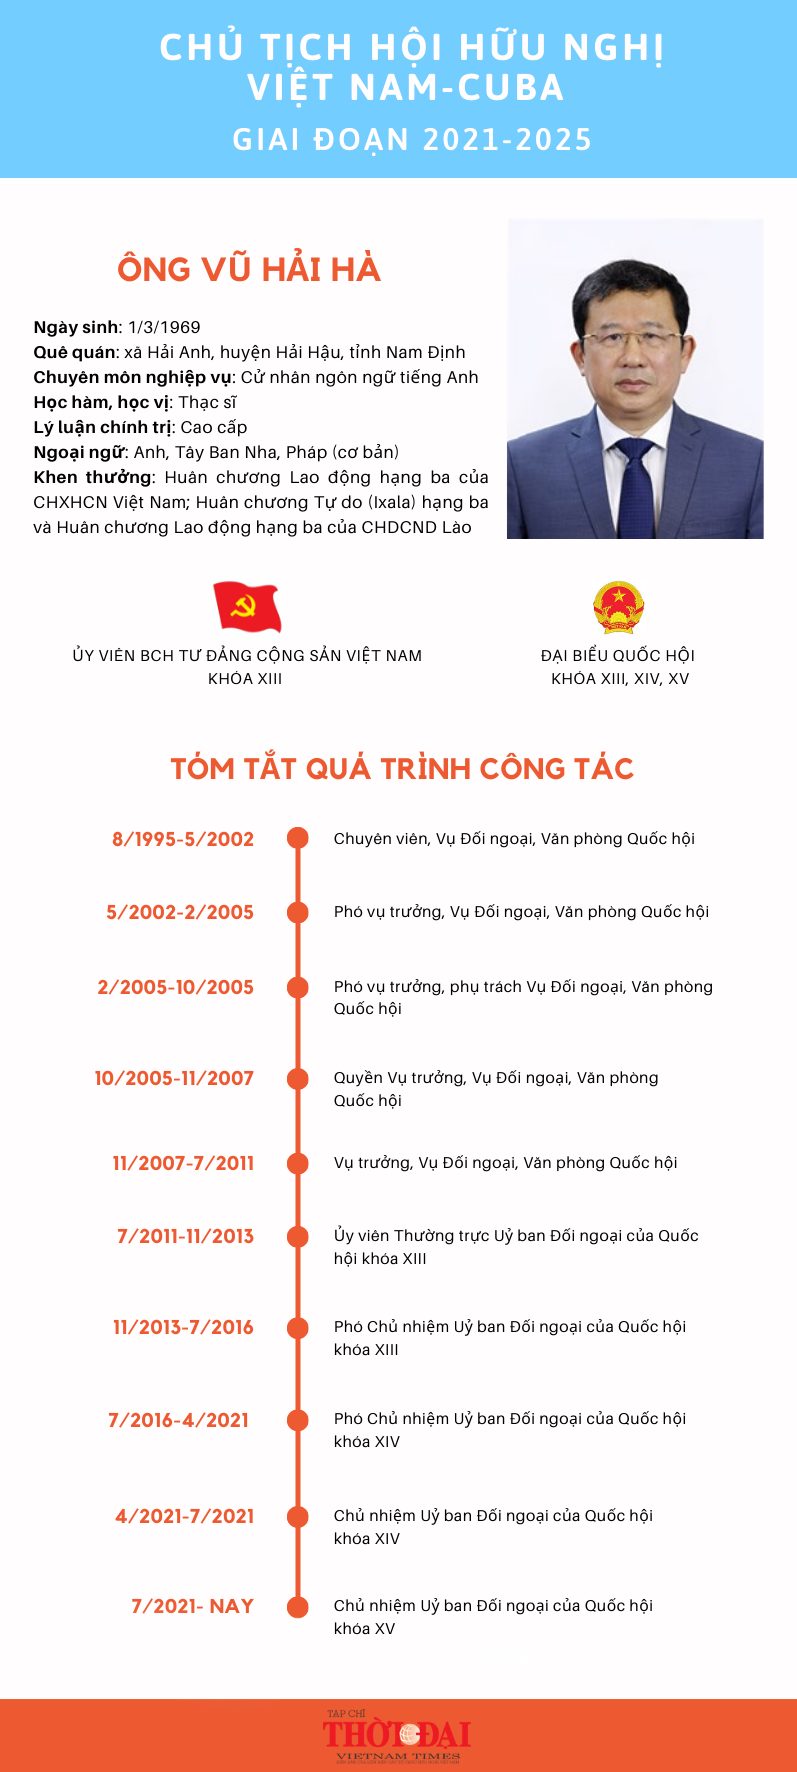 [Infographic] Chân dung Chủ tịch Hội Hữu nghị Việt Nam-Cuba giai đoạn 2021-2025 Vũ Hải Hà